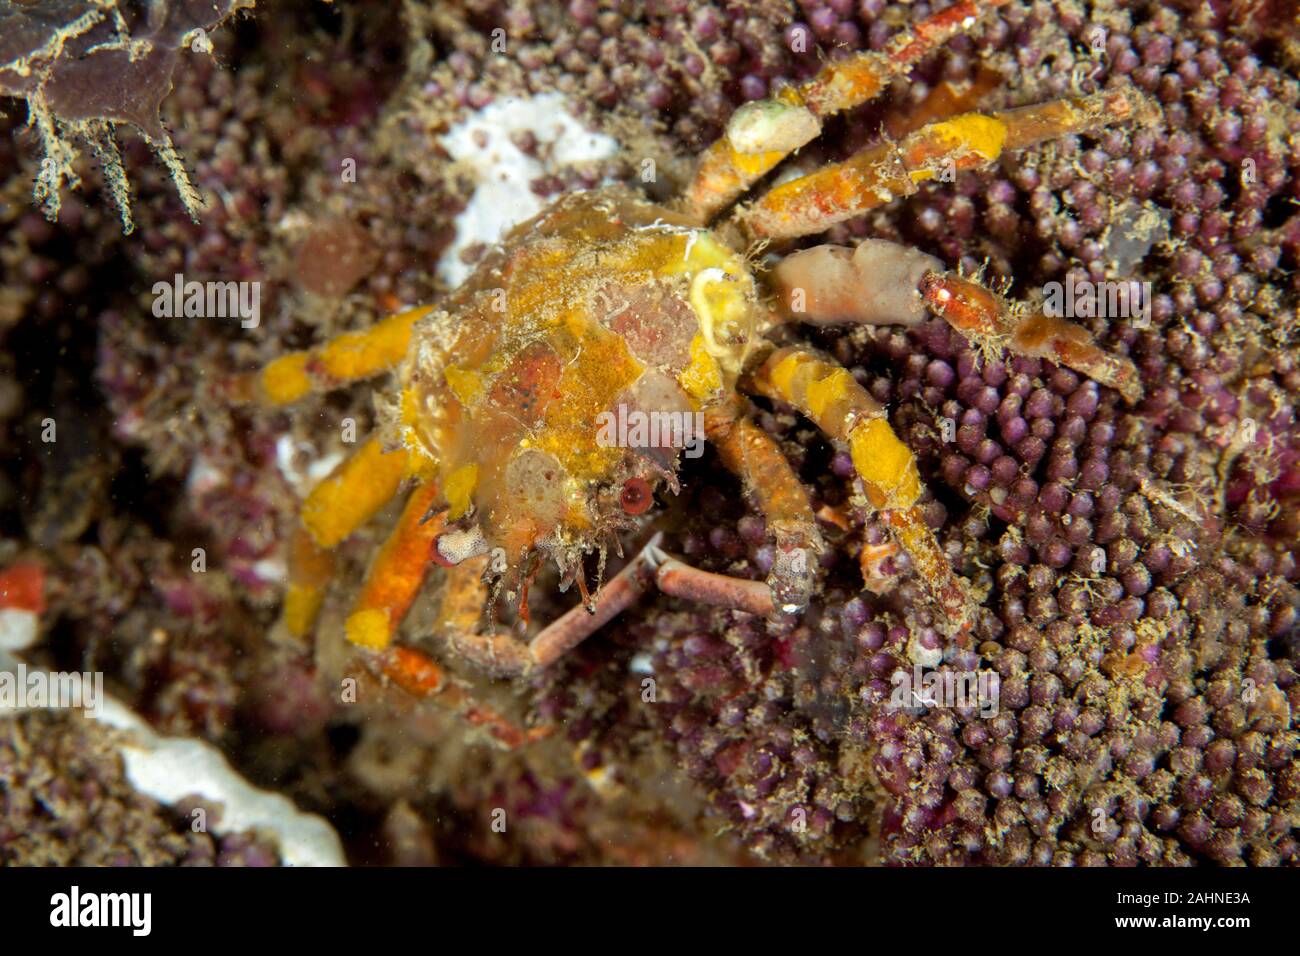 Majoidea, Spider crab Stock Photo